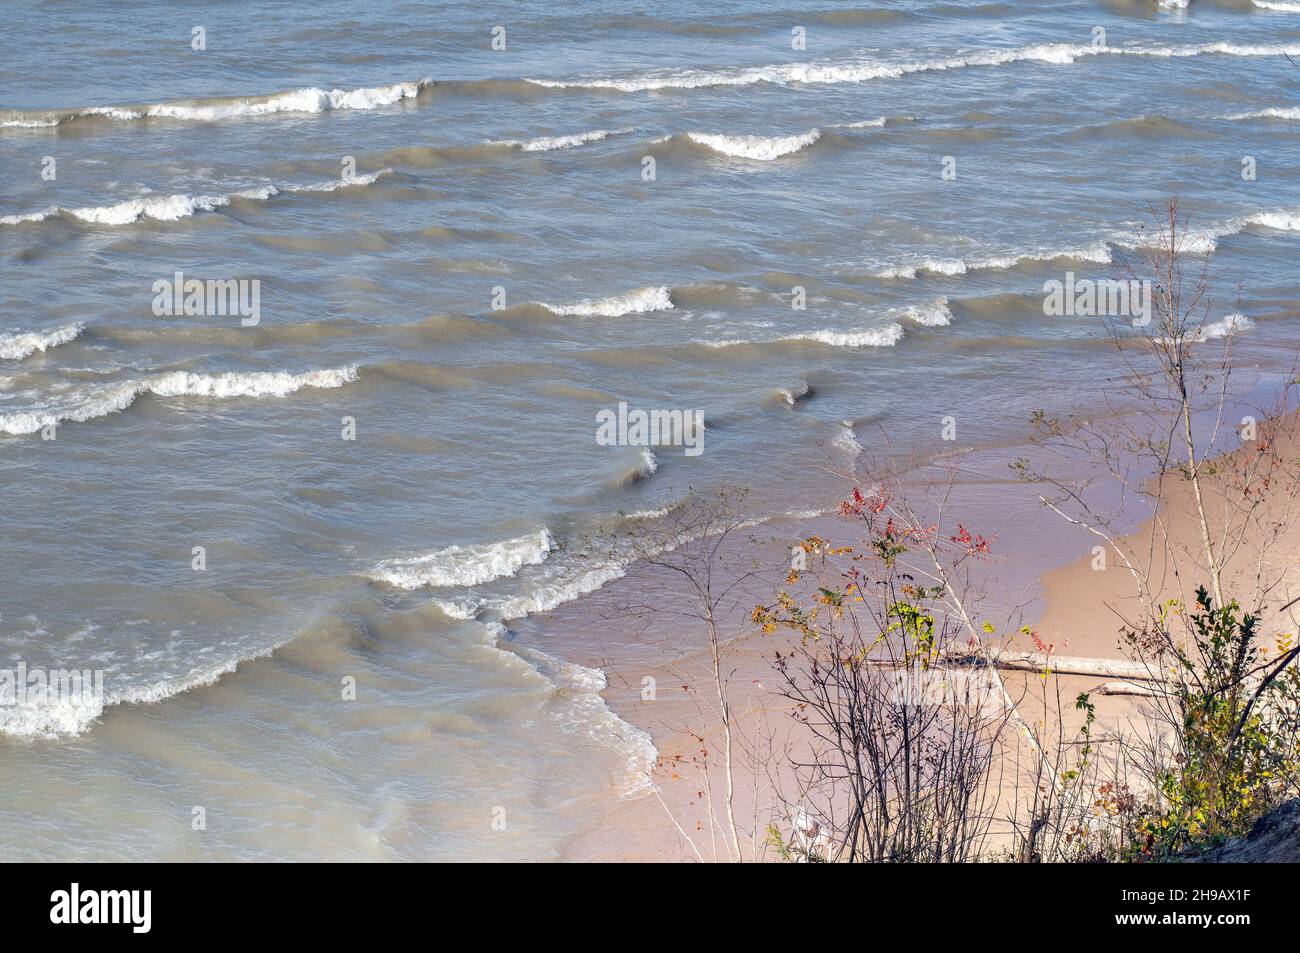 Le onde bianche si infrangono in una giornata ventosa sulle acque del lago Michigan negli Stati Uniti del Michigan Foto Stock